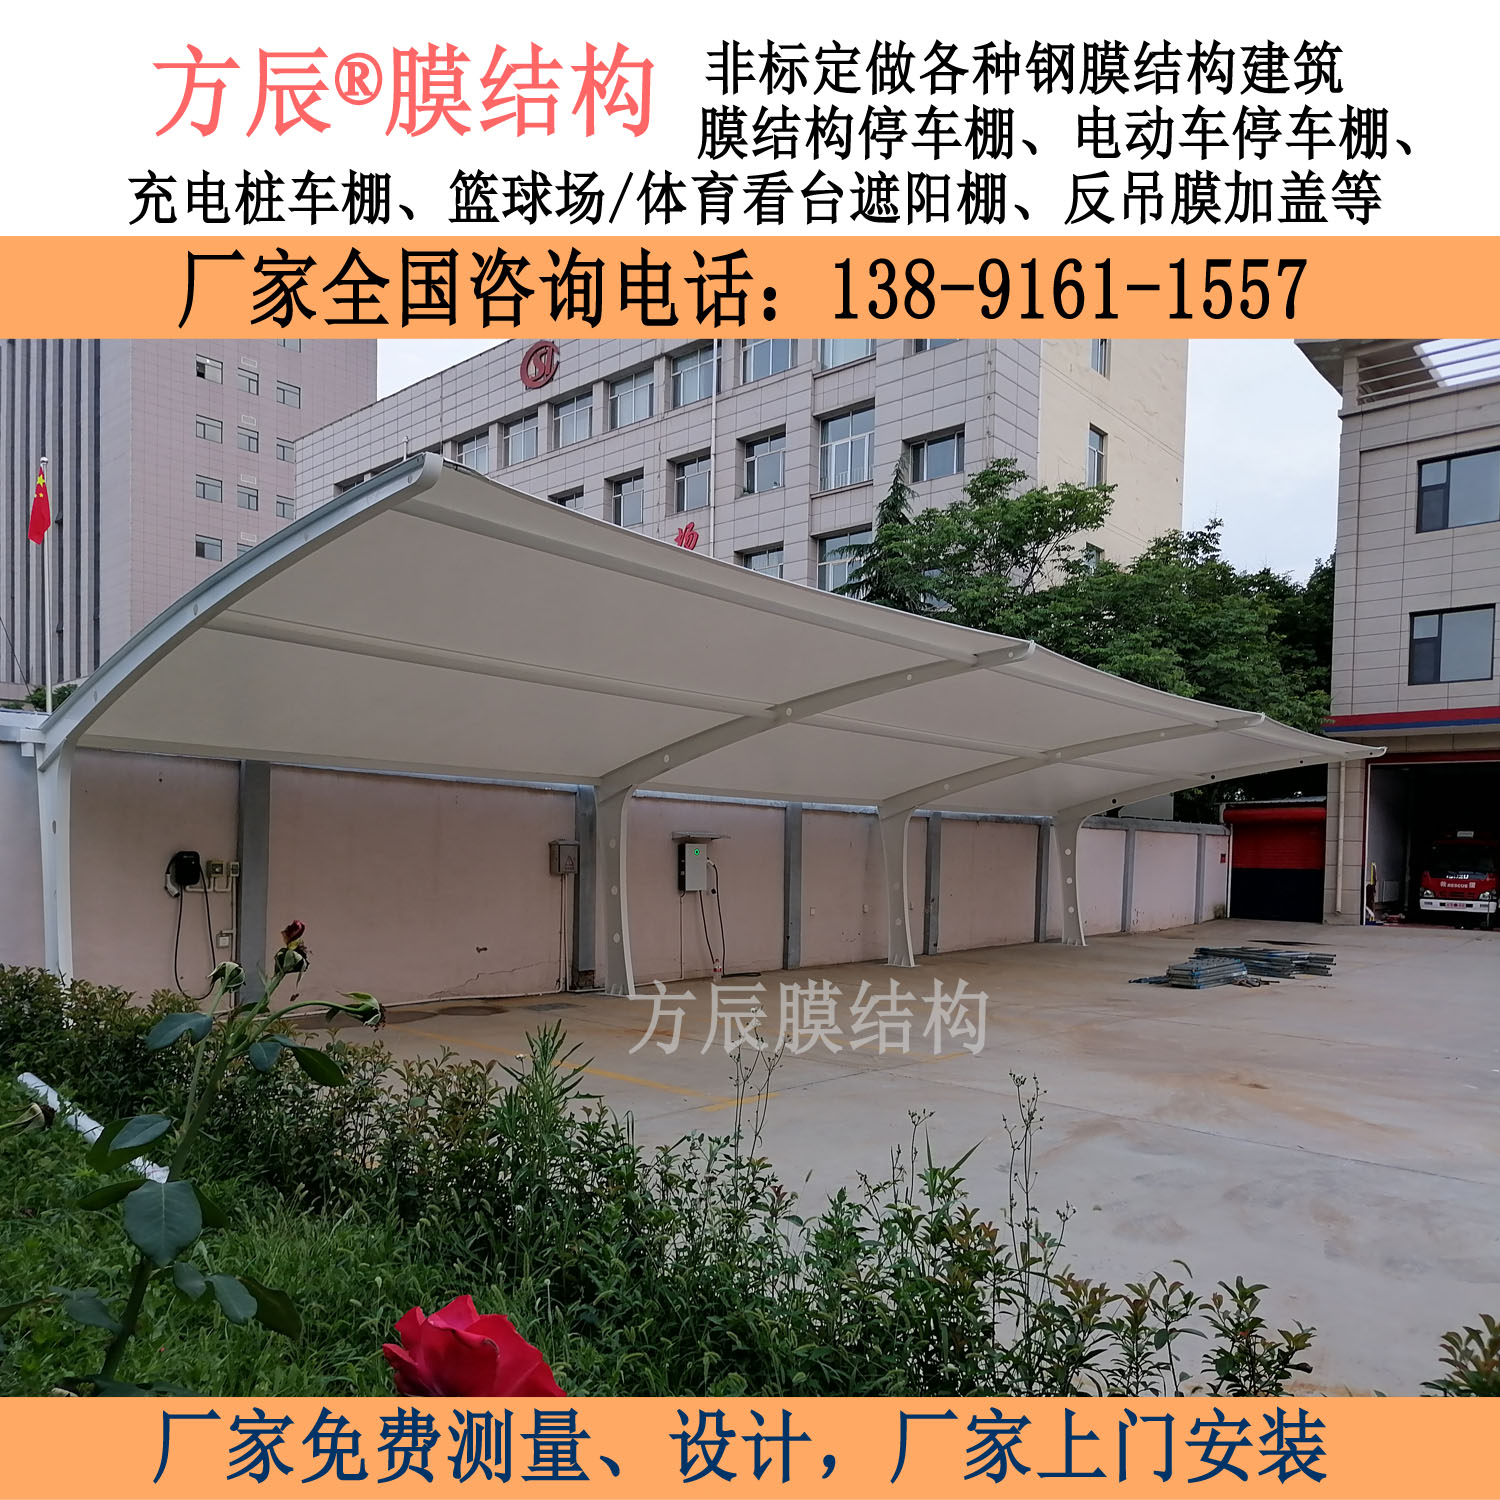 山西省运城市万荣县消防队内膜结构停车棚项目